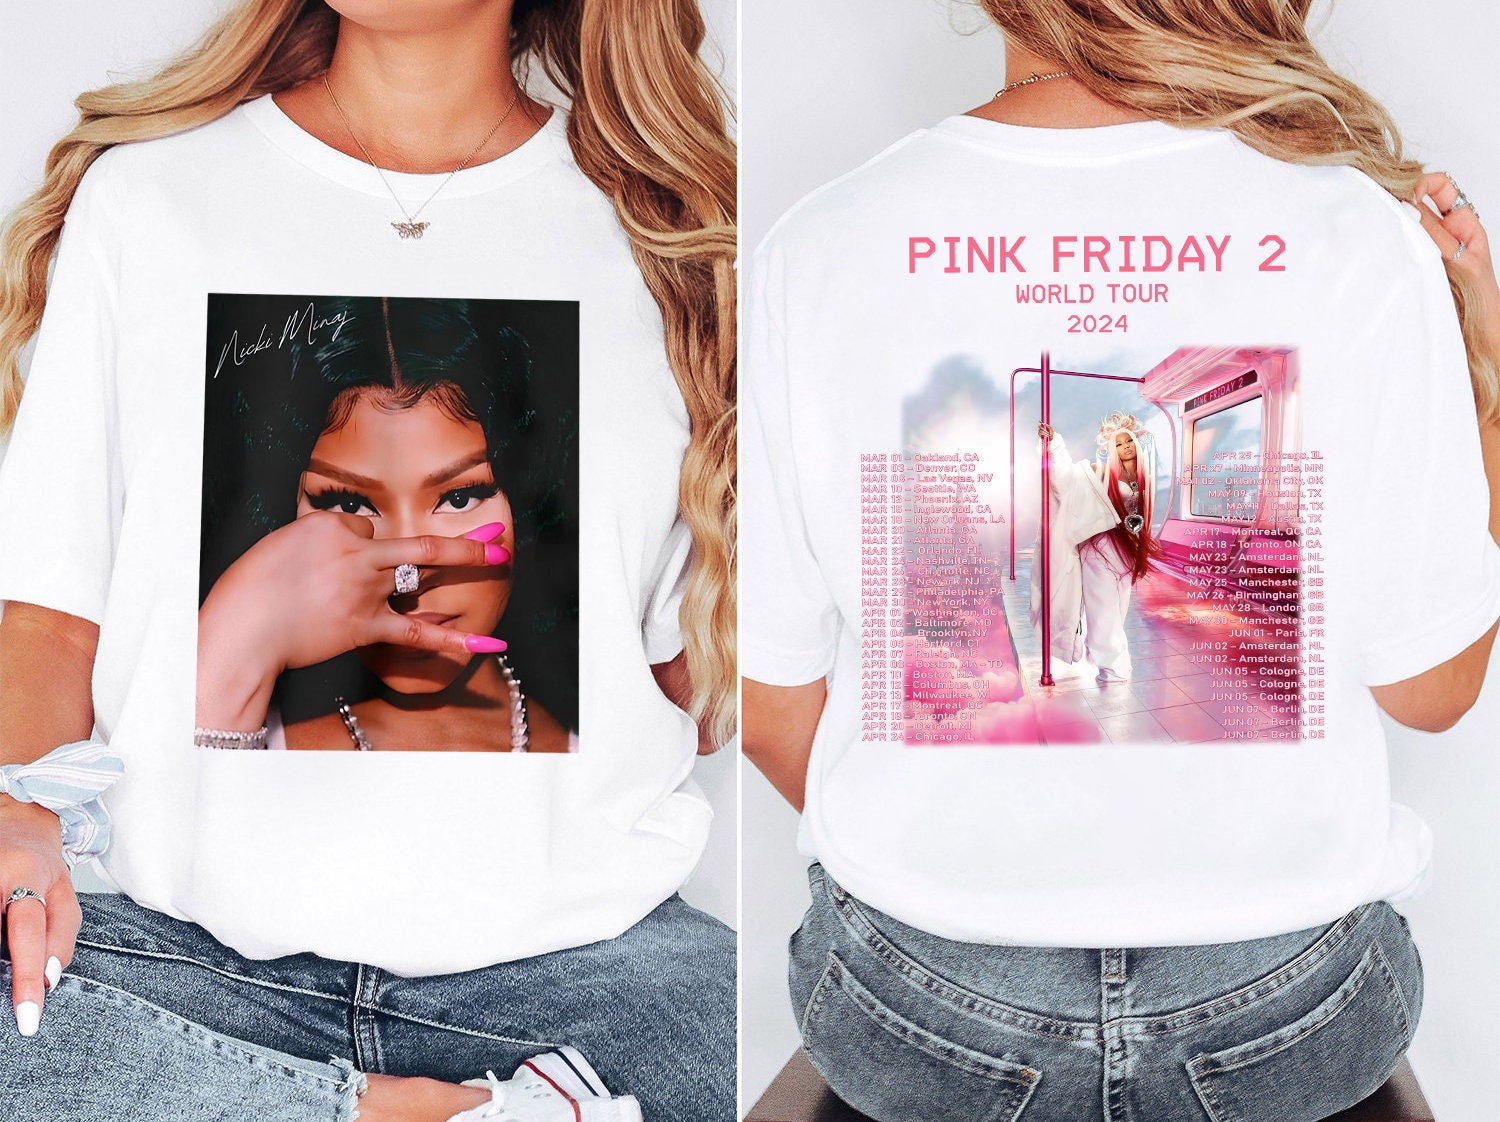 Pink Friday 2 Airbrush Nicki Minaj Shirt, Pink Friday 2 World Tour Shirt